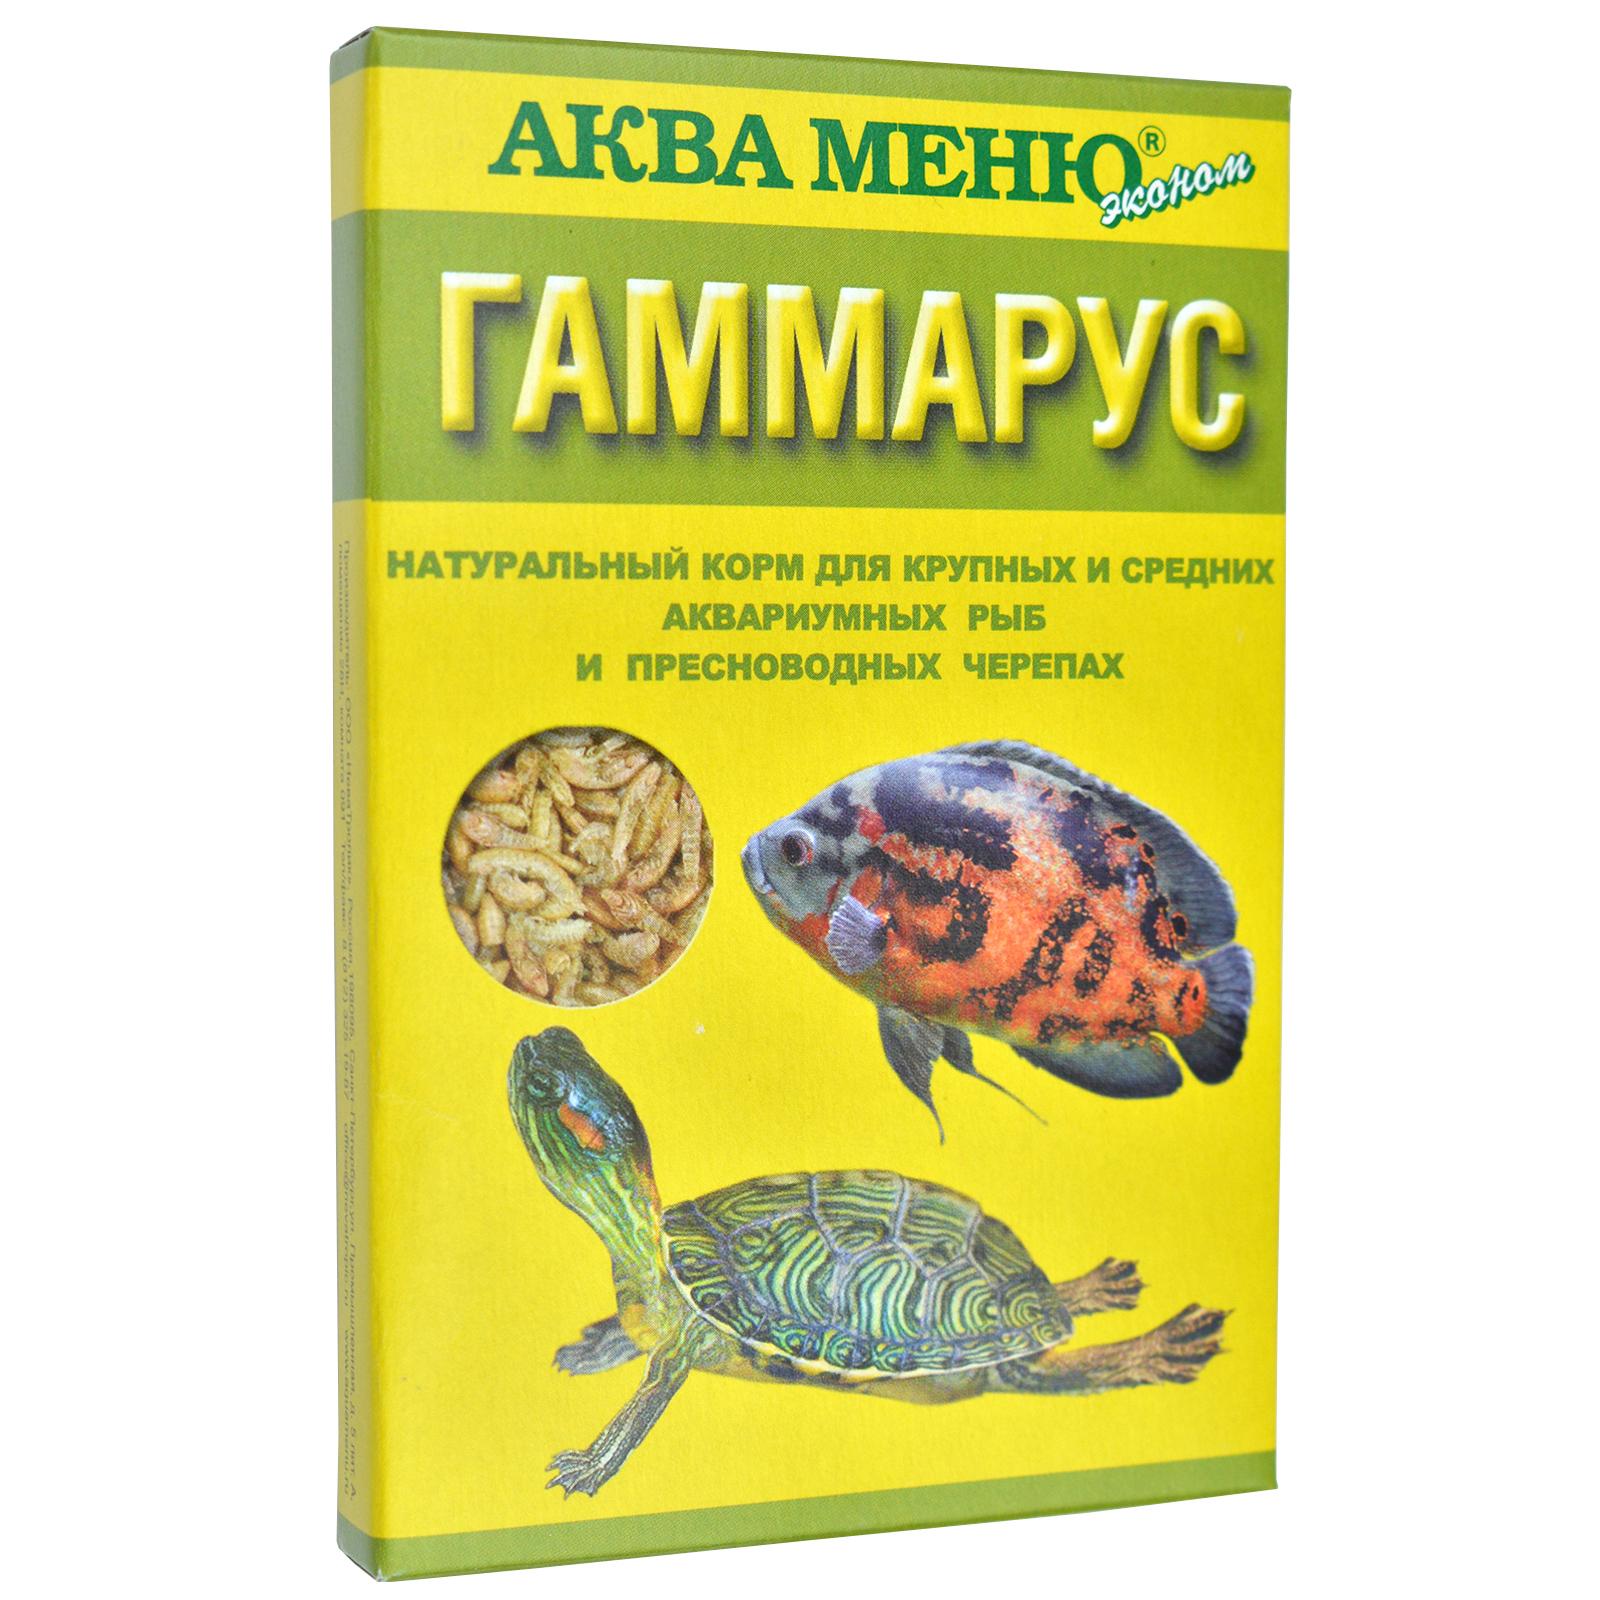 ГАММАРУС - натуральный корм для крупных и средних аквариумных рыб и пресноводных черепах   11 грамм, 11200100959